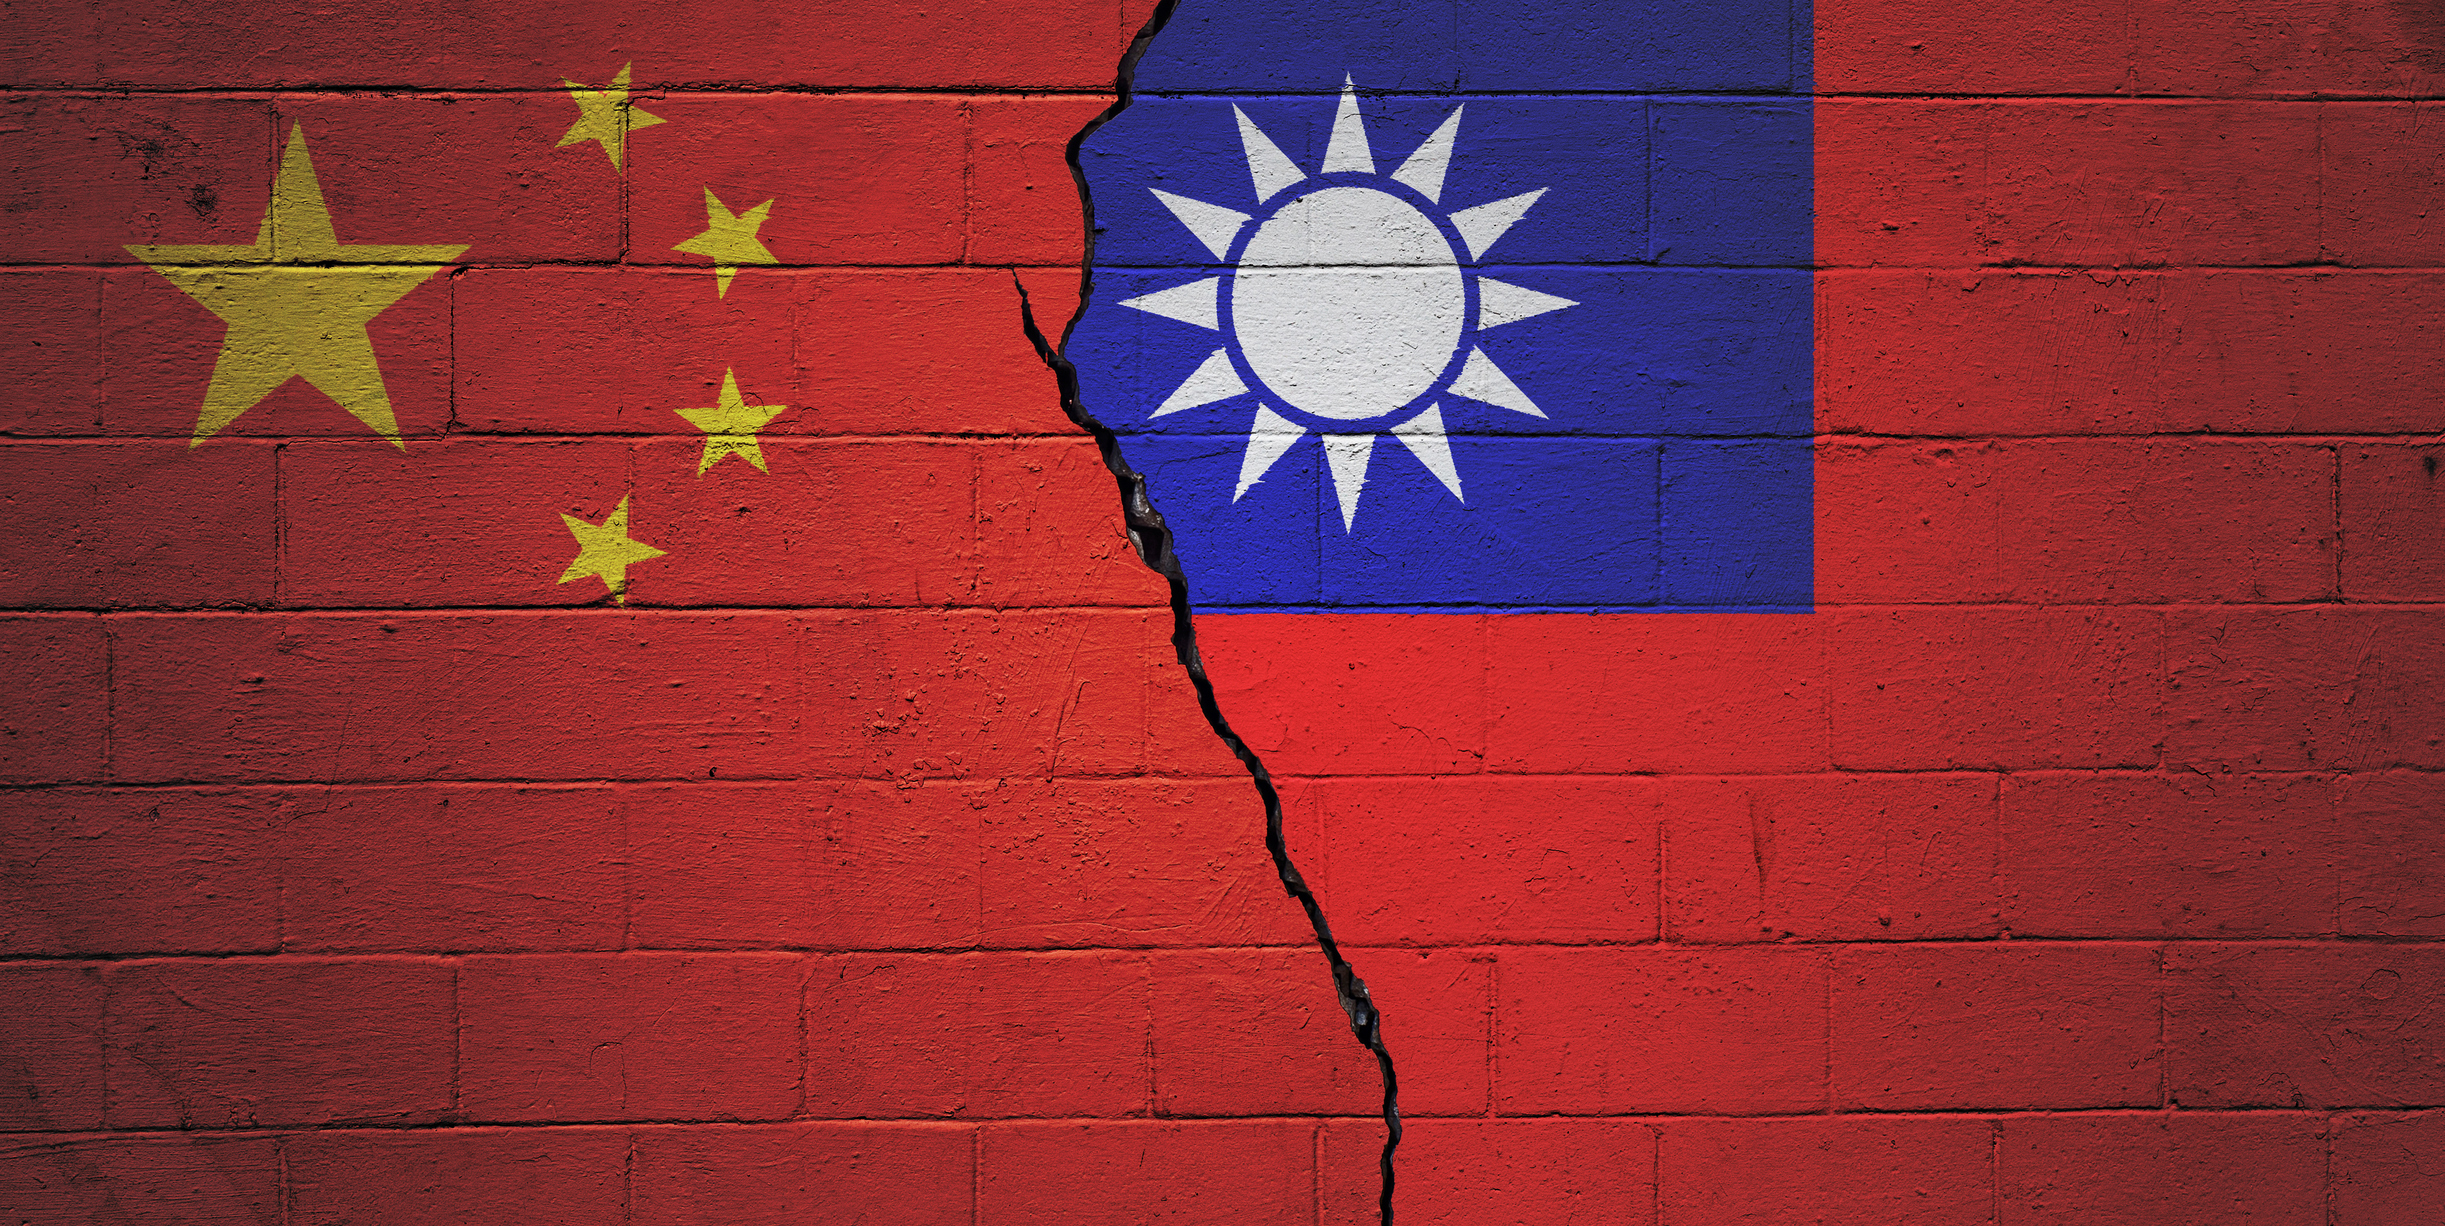 Αναζωπυρώνεται η κόντρα της Κίνας με Σιγκαπούρη – Φιλιππίνες λόγω των εκλογών στην Ταϊβάν